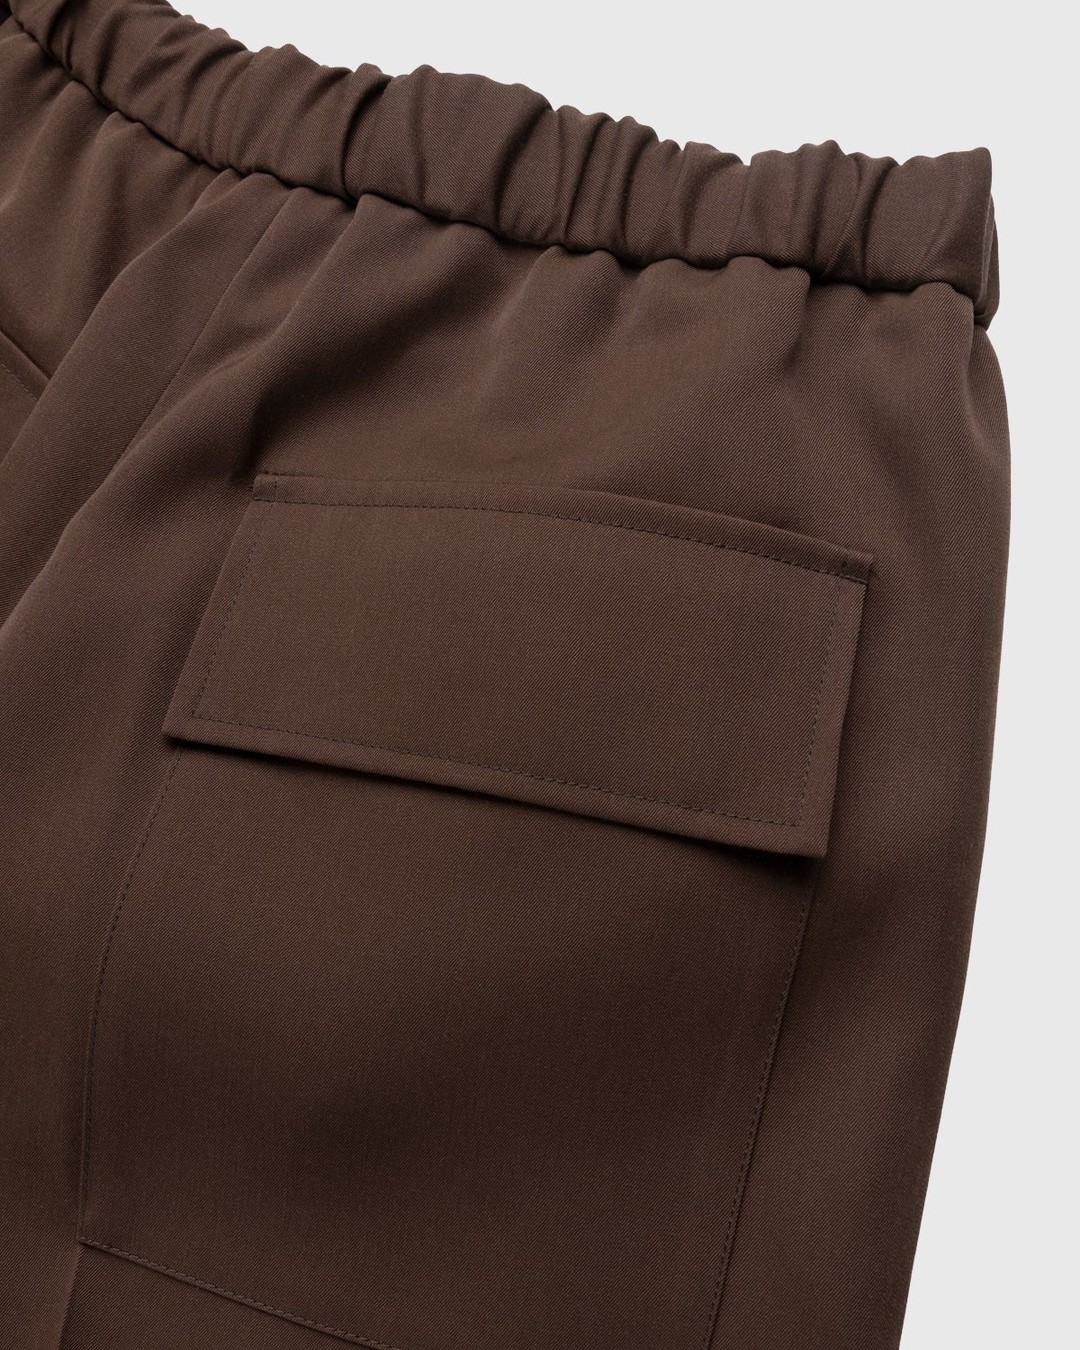 Jil Sander – Wool Trousers Medium Brown - Pants - Brown - Image 4